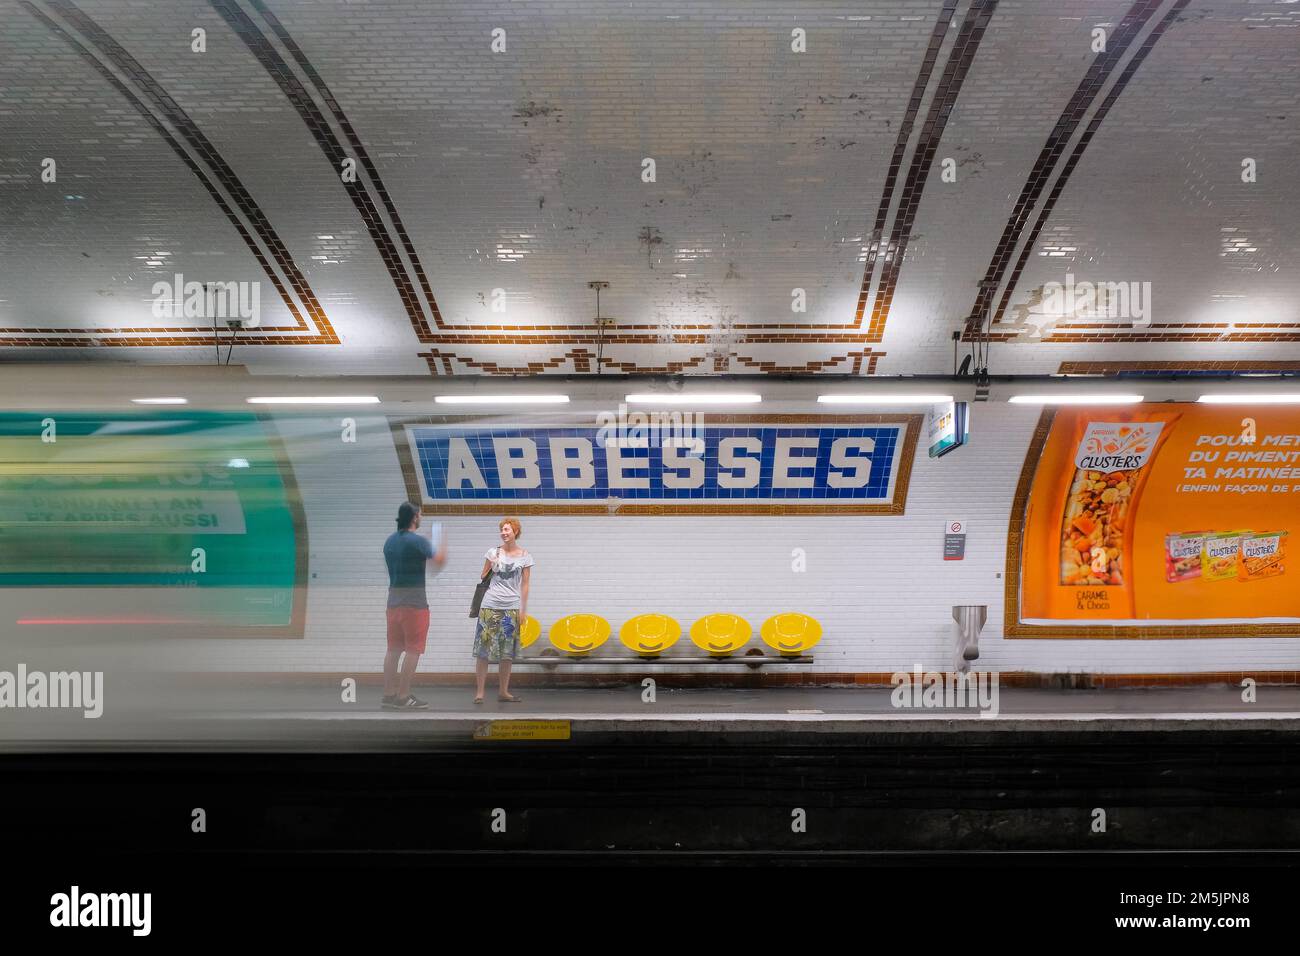 Paris, France - l'homme et la femme parlent sur la plate-forme en attendant le prochain train. Départ du train à blur à l'intérieur de la station de métro Abbesses à Montmartre. Banque D'Images